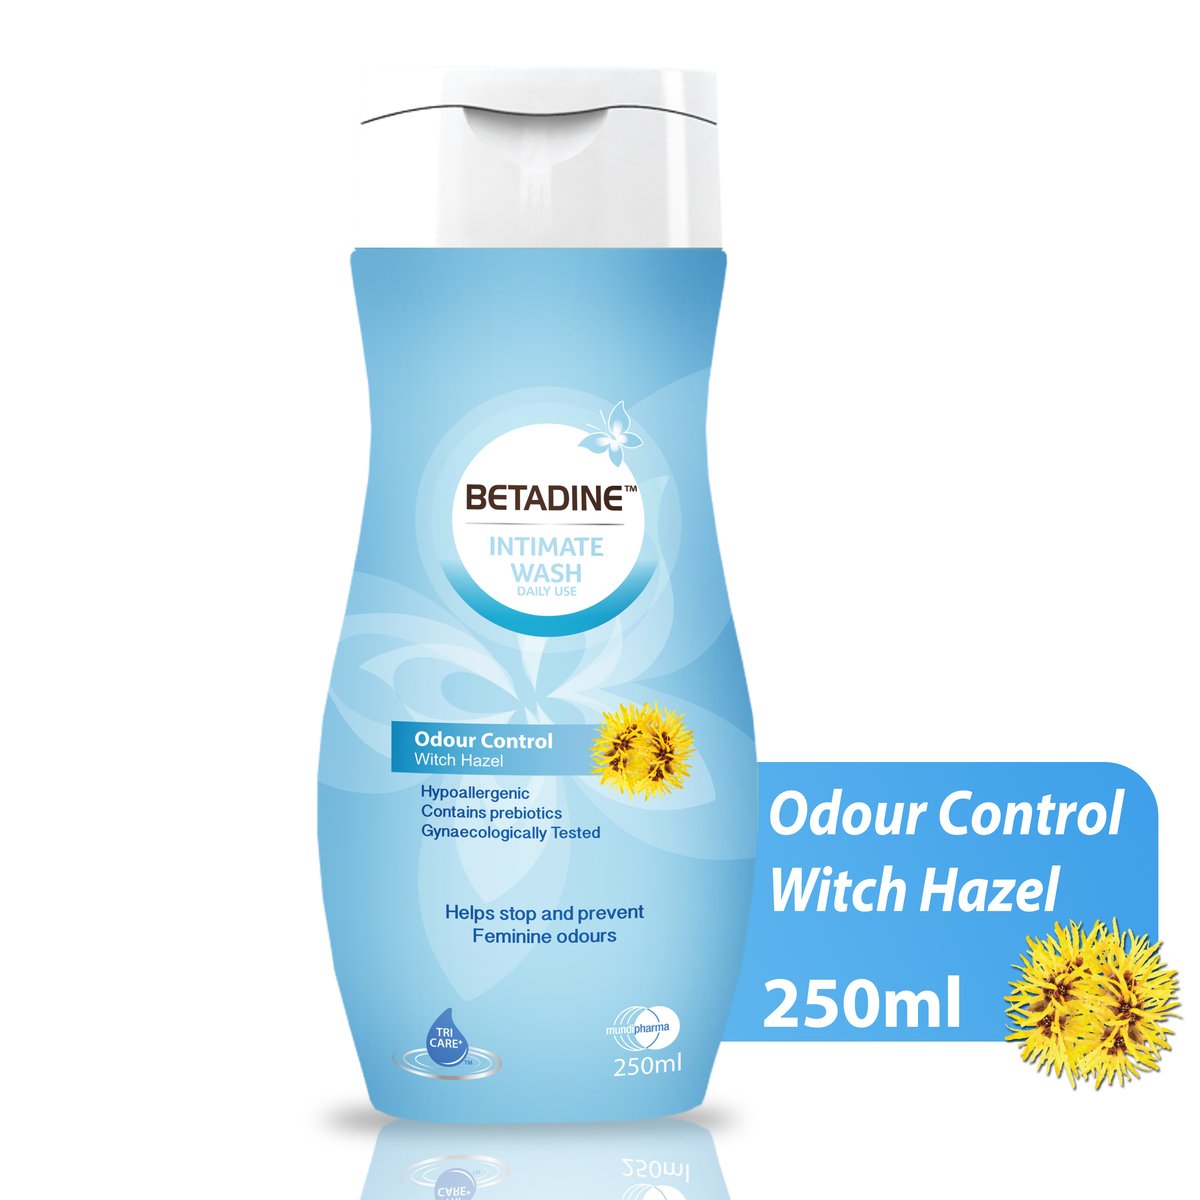 Betadine Intimate Wash Odour Control Witch Hazel 250ml